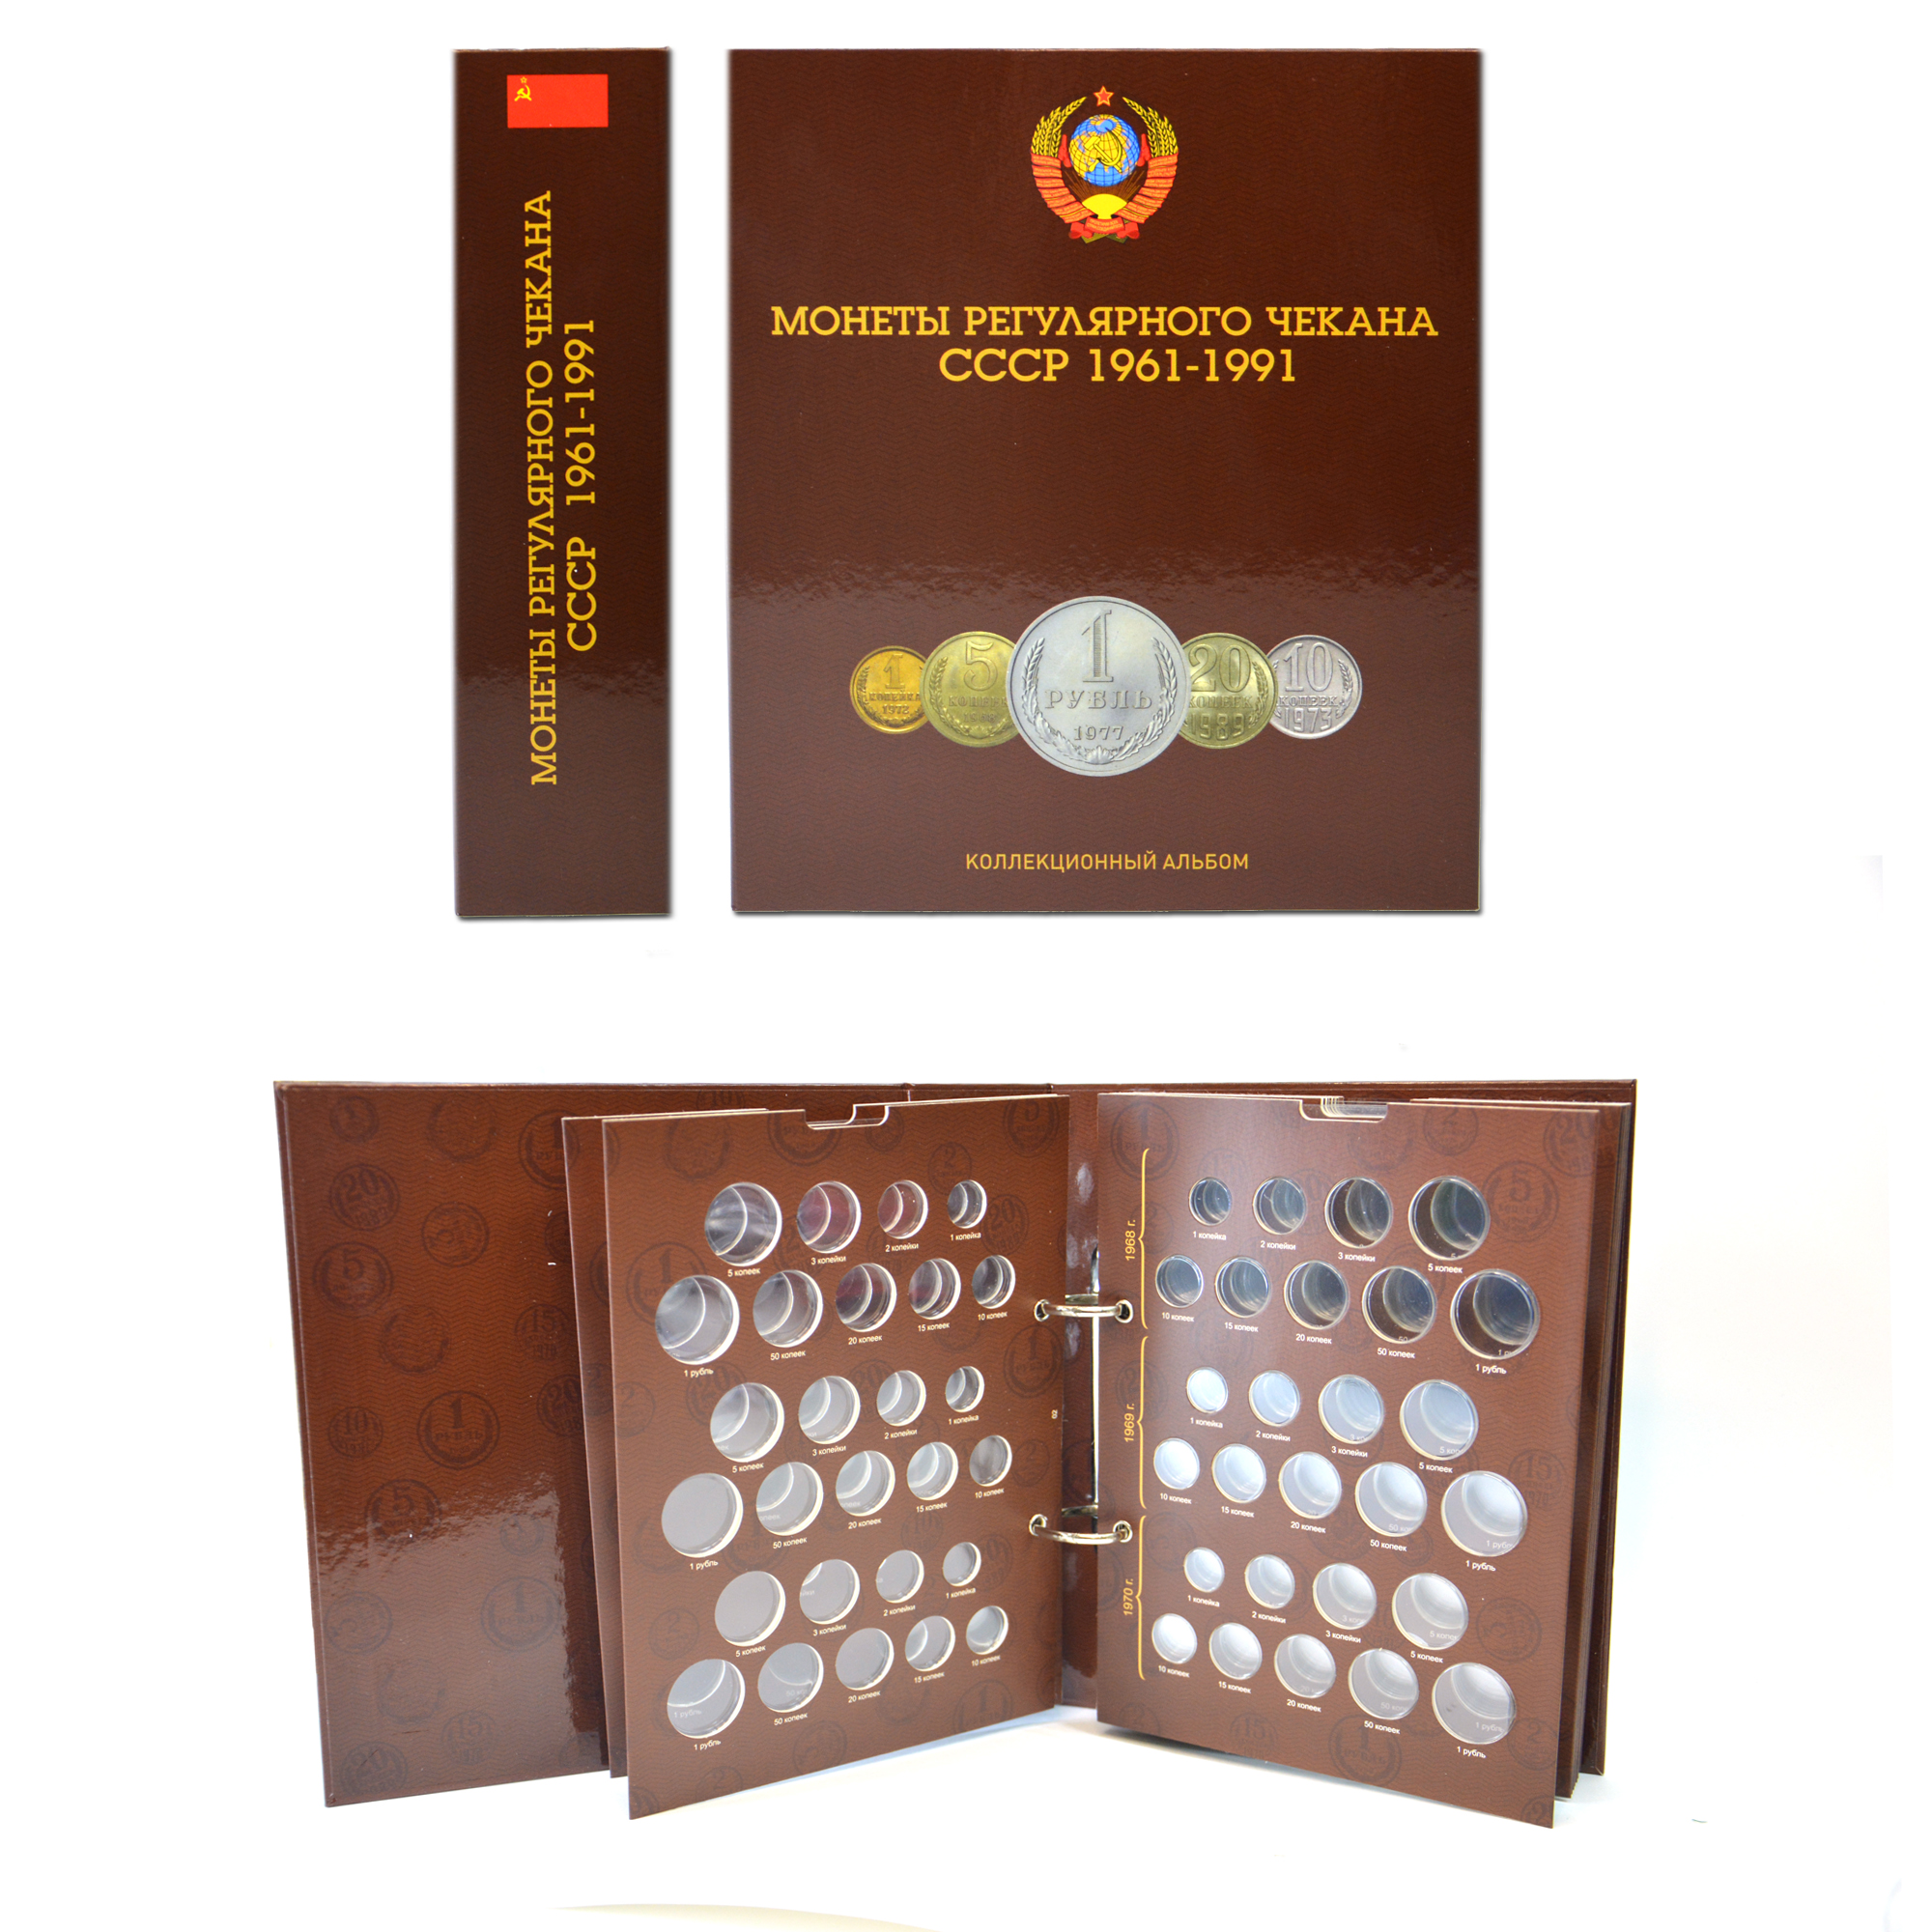 Купить альбом с листами для разменных монет СССР 1961-1991 года, фото 